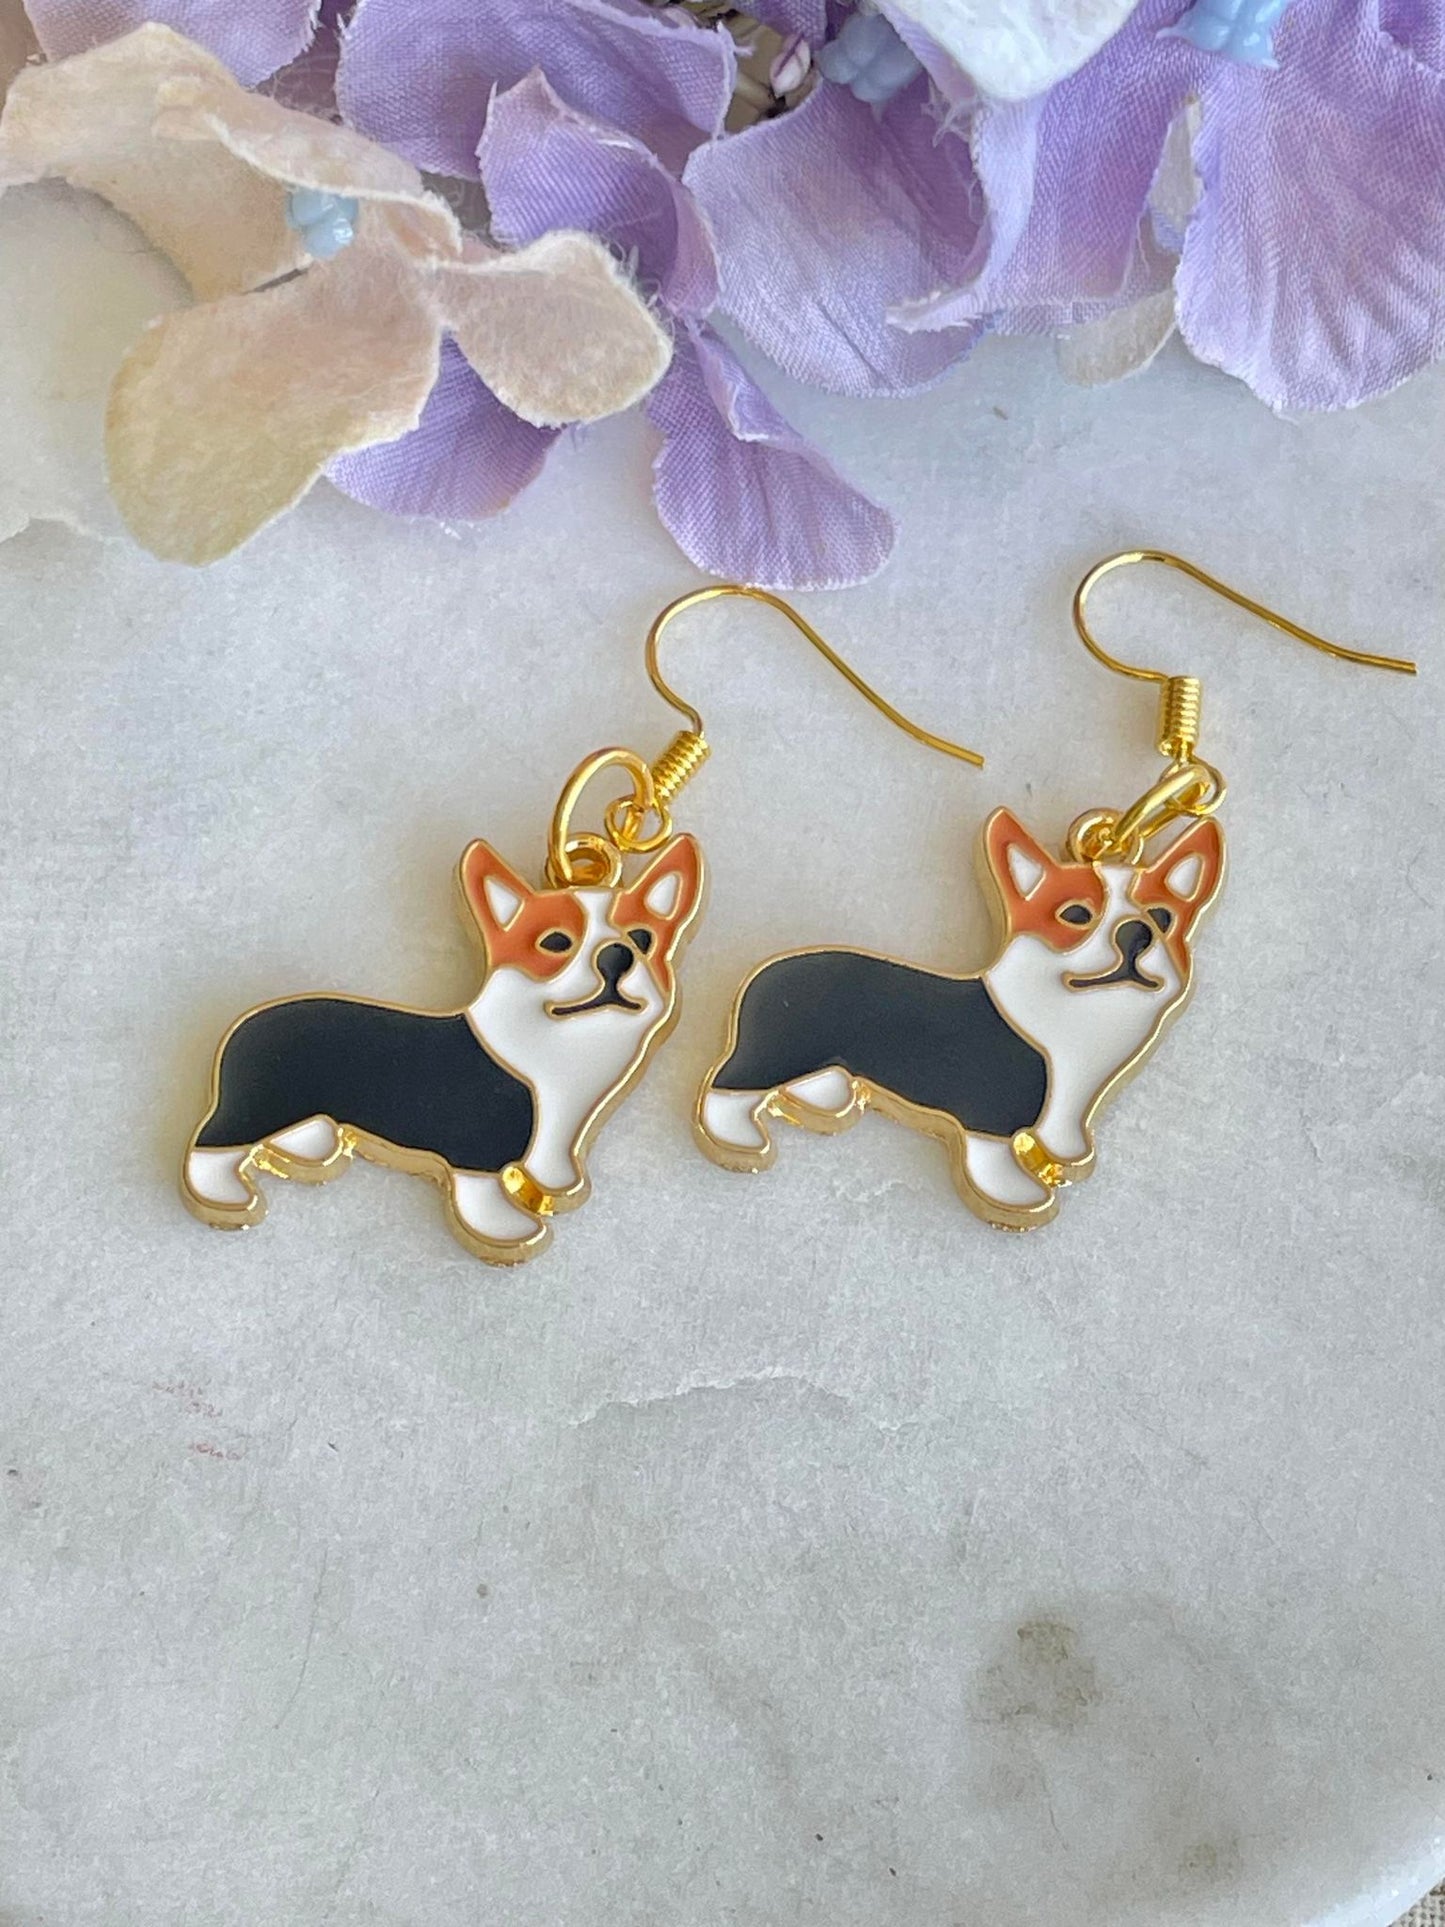 Puppy friend earrings